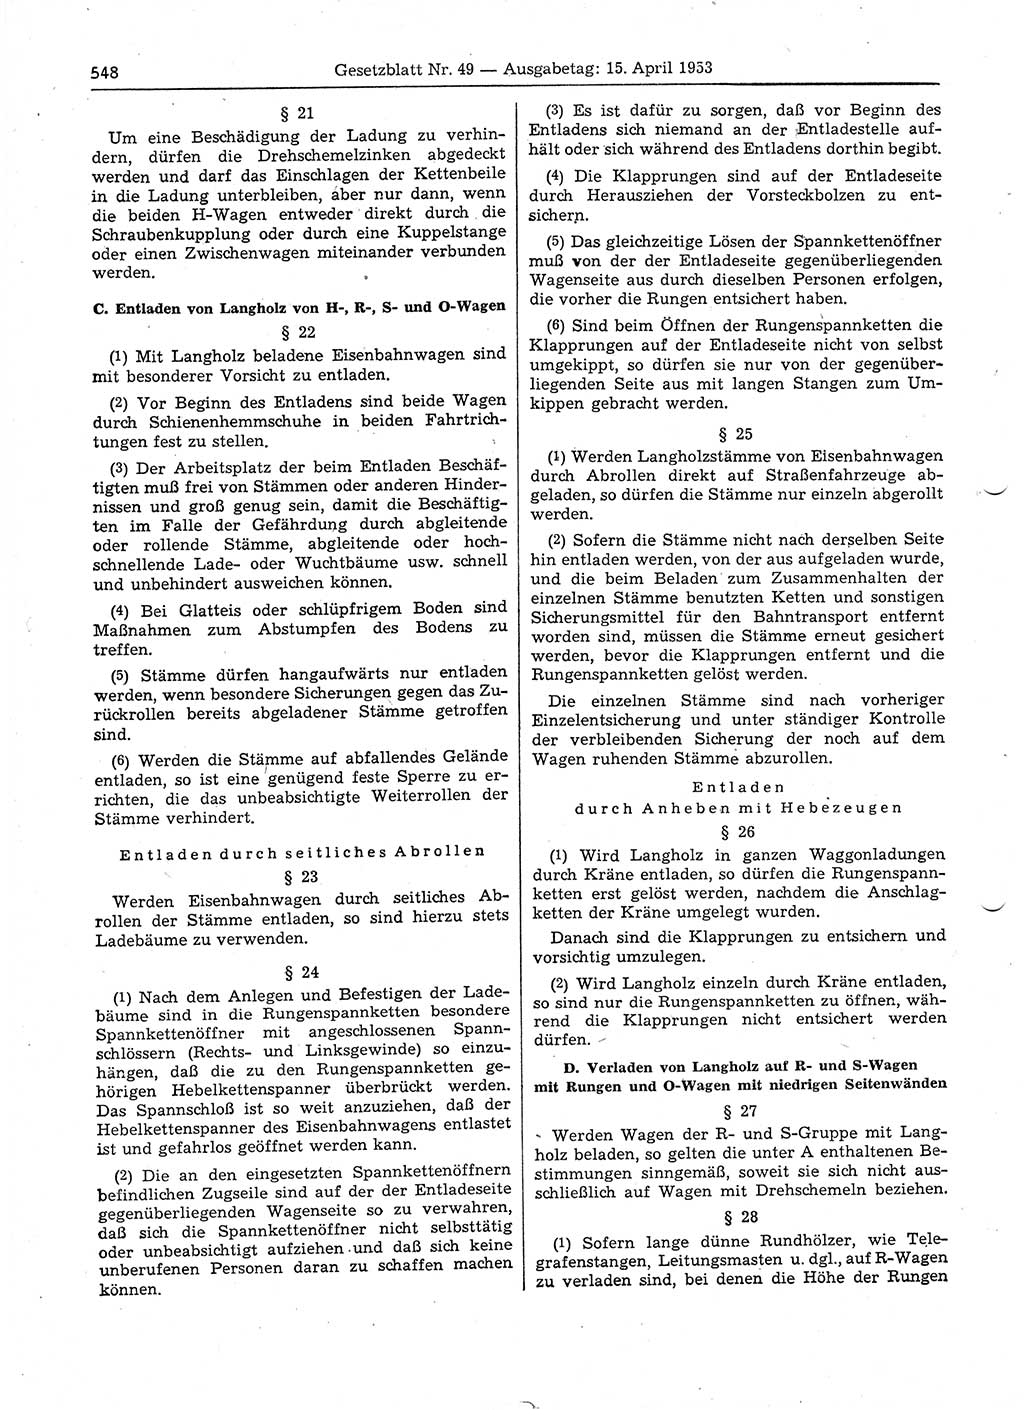 Gesetzblatt (GBl.) der Deutschen Demokratischen Republik (DDR) 1953, Seite 548 (GBl. DDR 1953, S. 548)